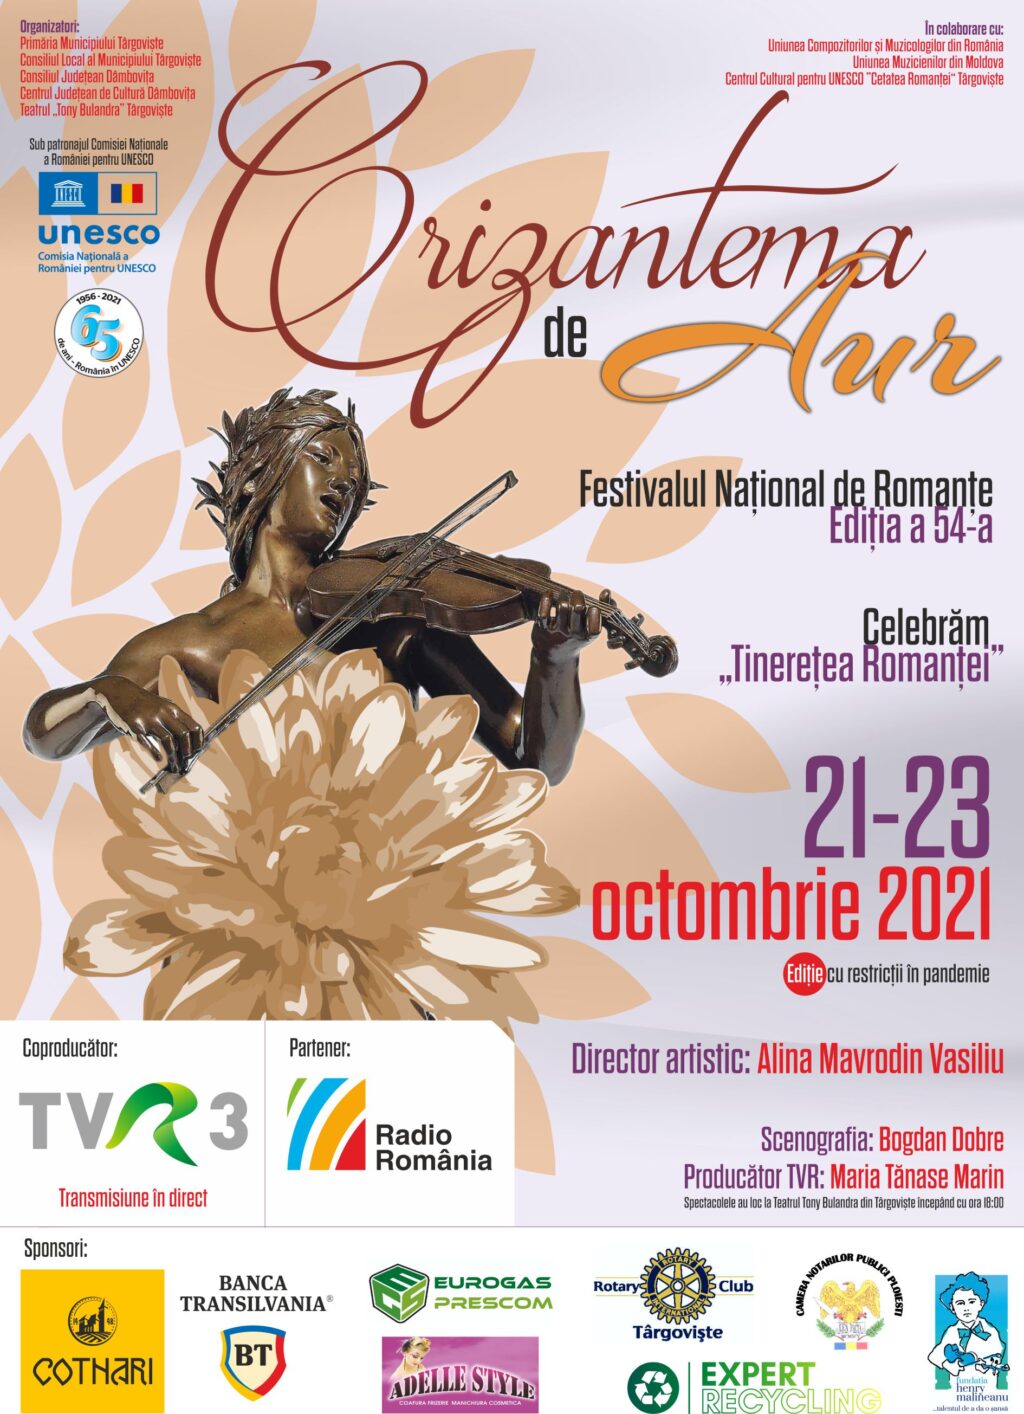 21-23 octombrie, Festivalul Naţional de Interpretare şi Creaţie a Romanţei „Crizantema de Aur”, ediţia a 54-a, 2021